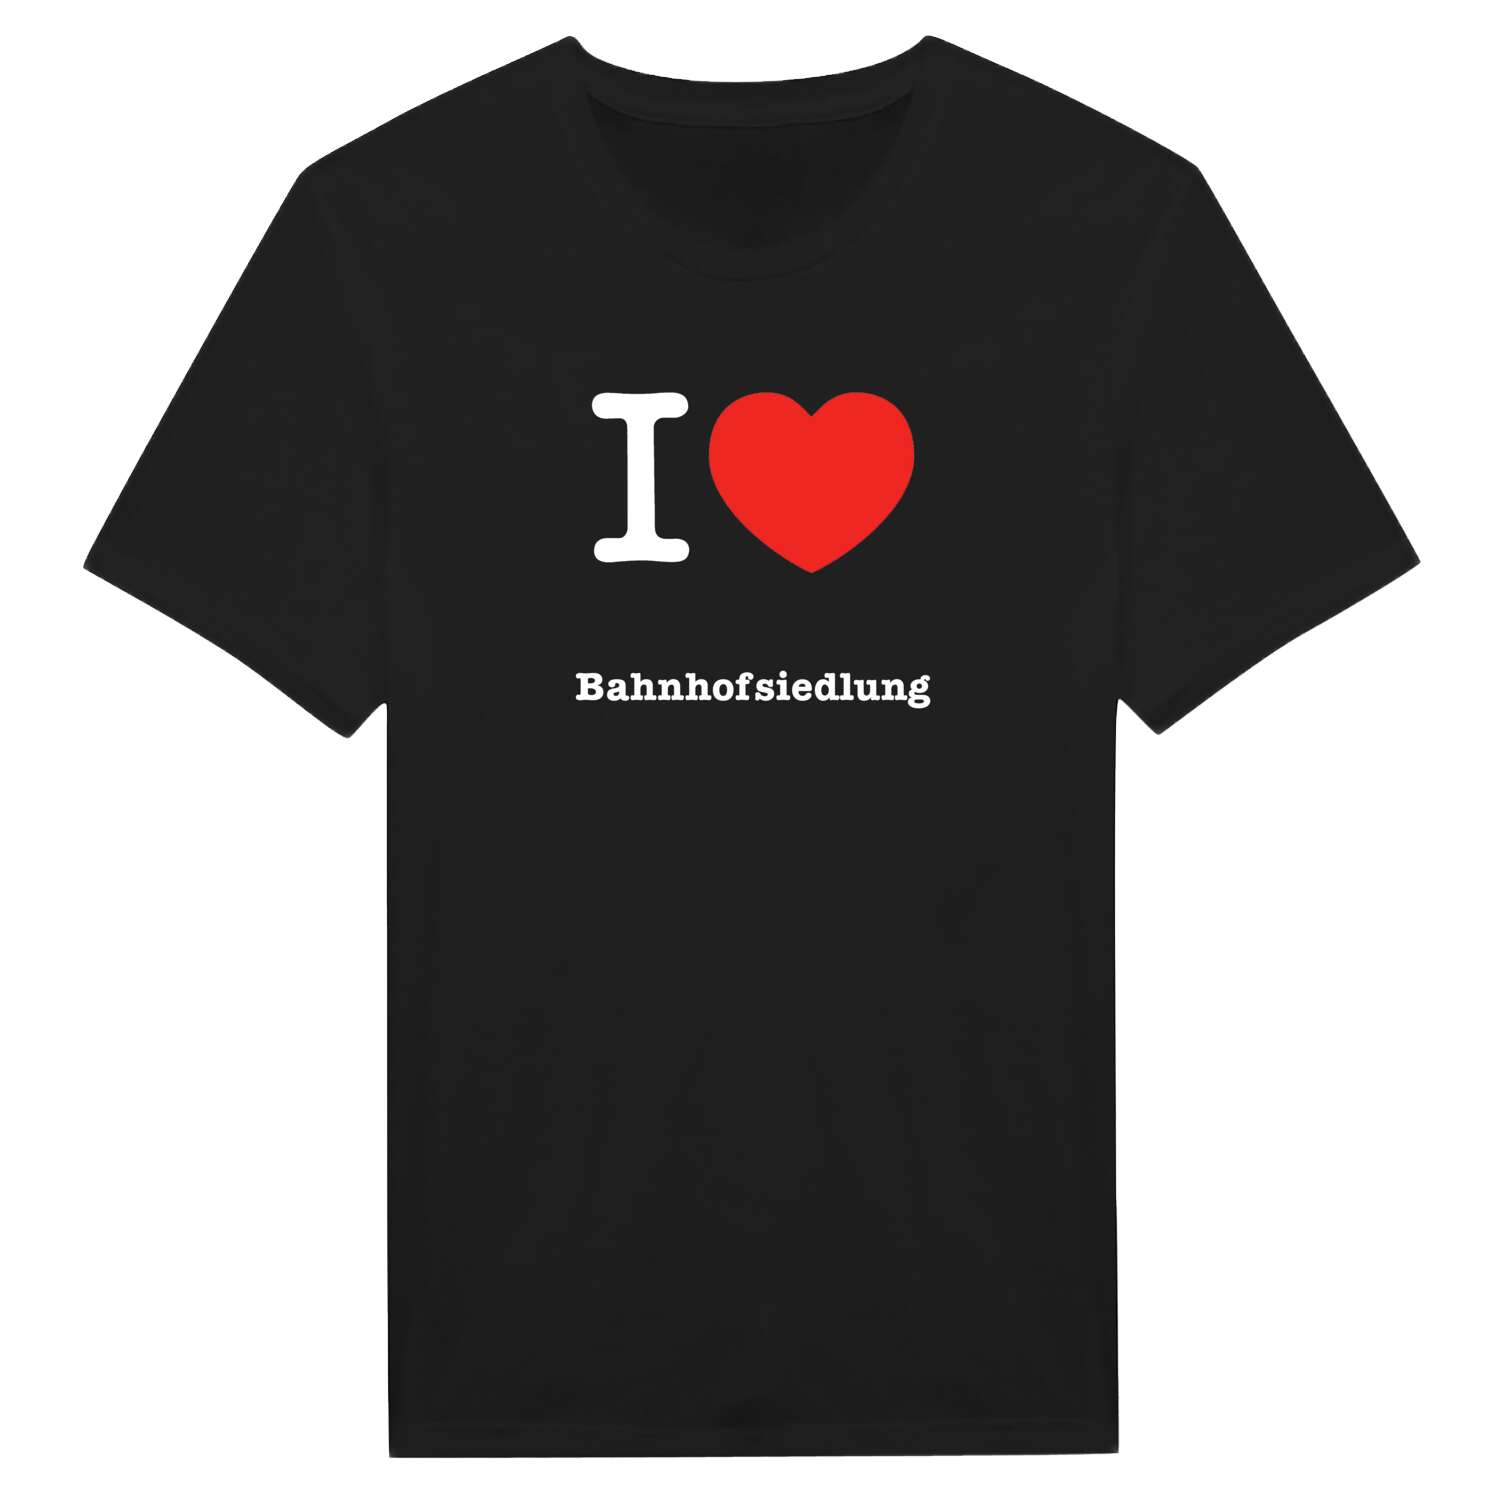 Bahnhofsiedlung T-Shirt »I love«